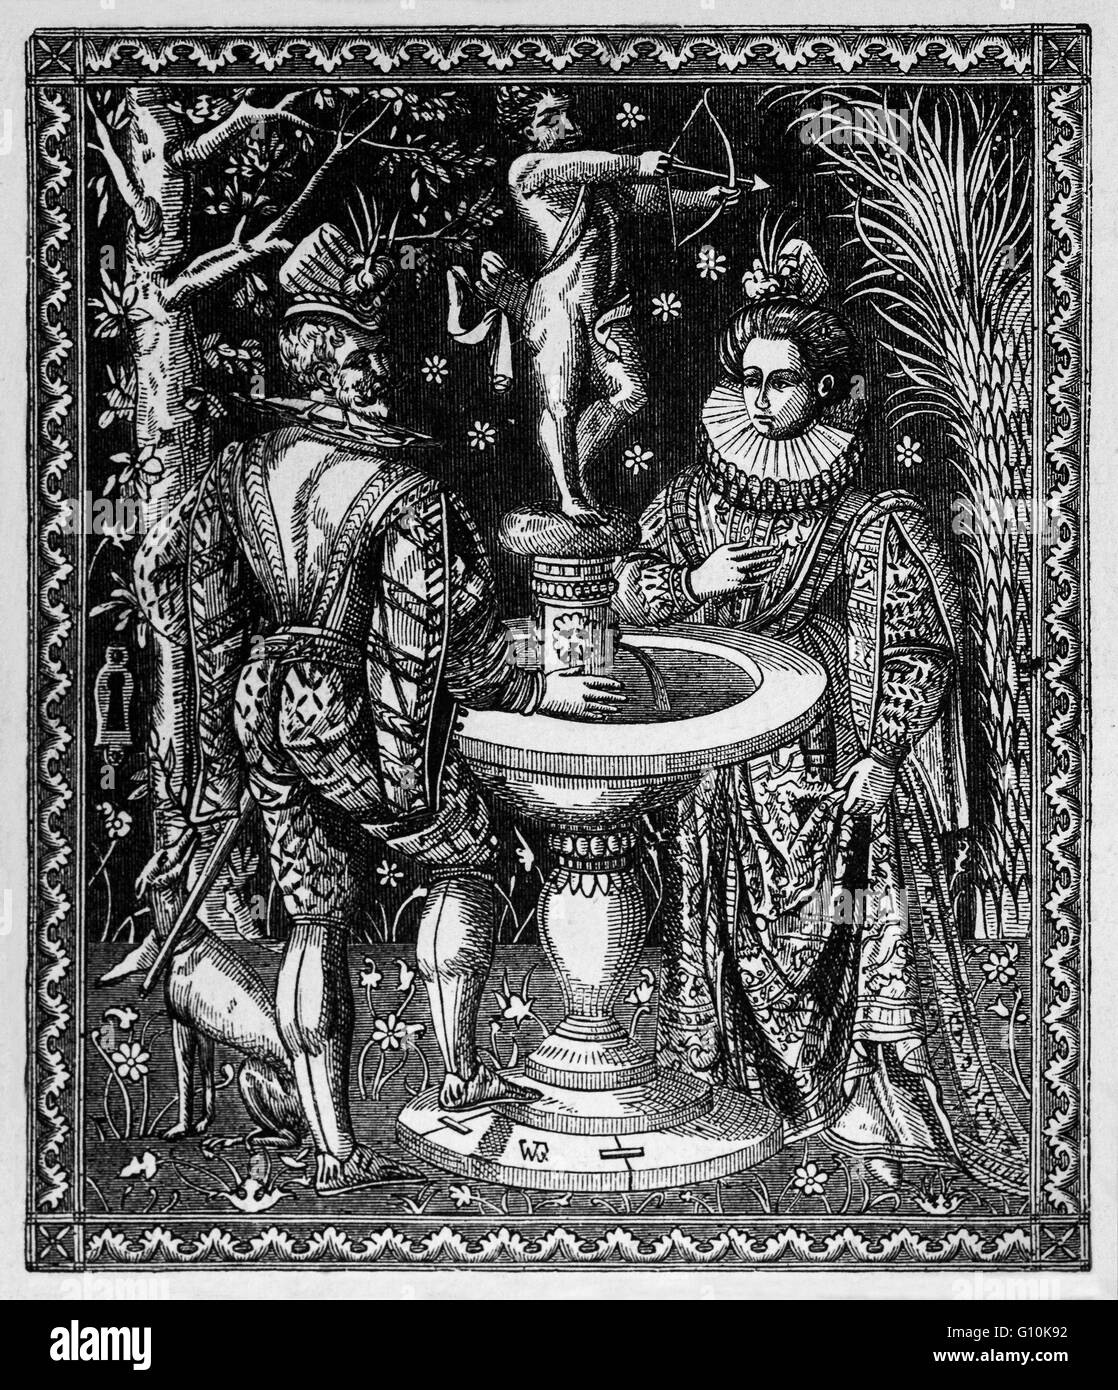 Die Hochzeit die Schatulle von Philip II von Spanien auf seine Ehe mit Mary ich 1554. Er war König von Spanien, König von Portugal, König von Neapel und Sizilien, und während seiner Ehe mit Königin Mary I, war König von England und Irland. Stockfoto